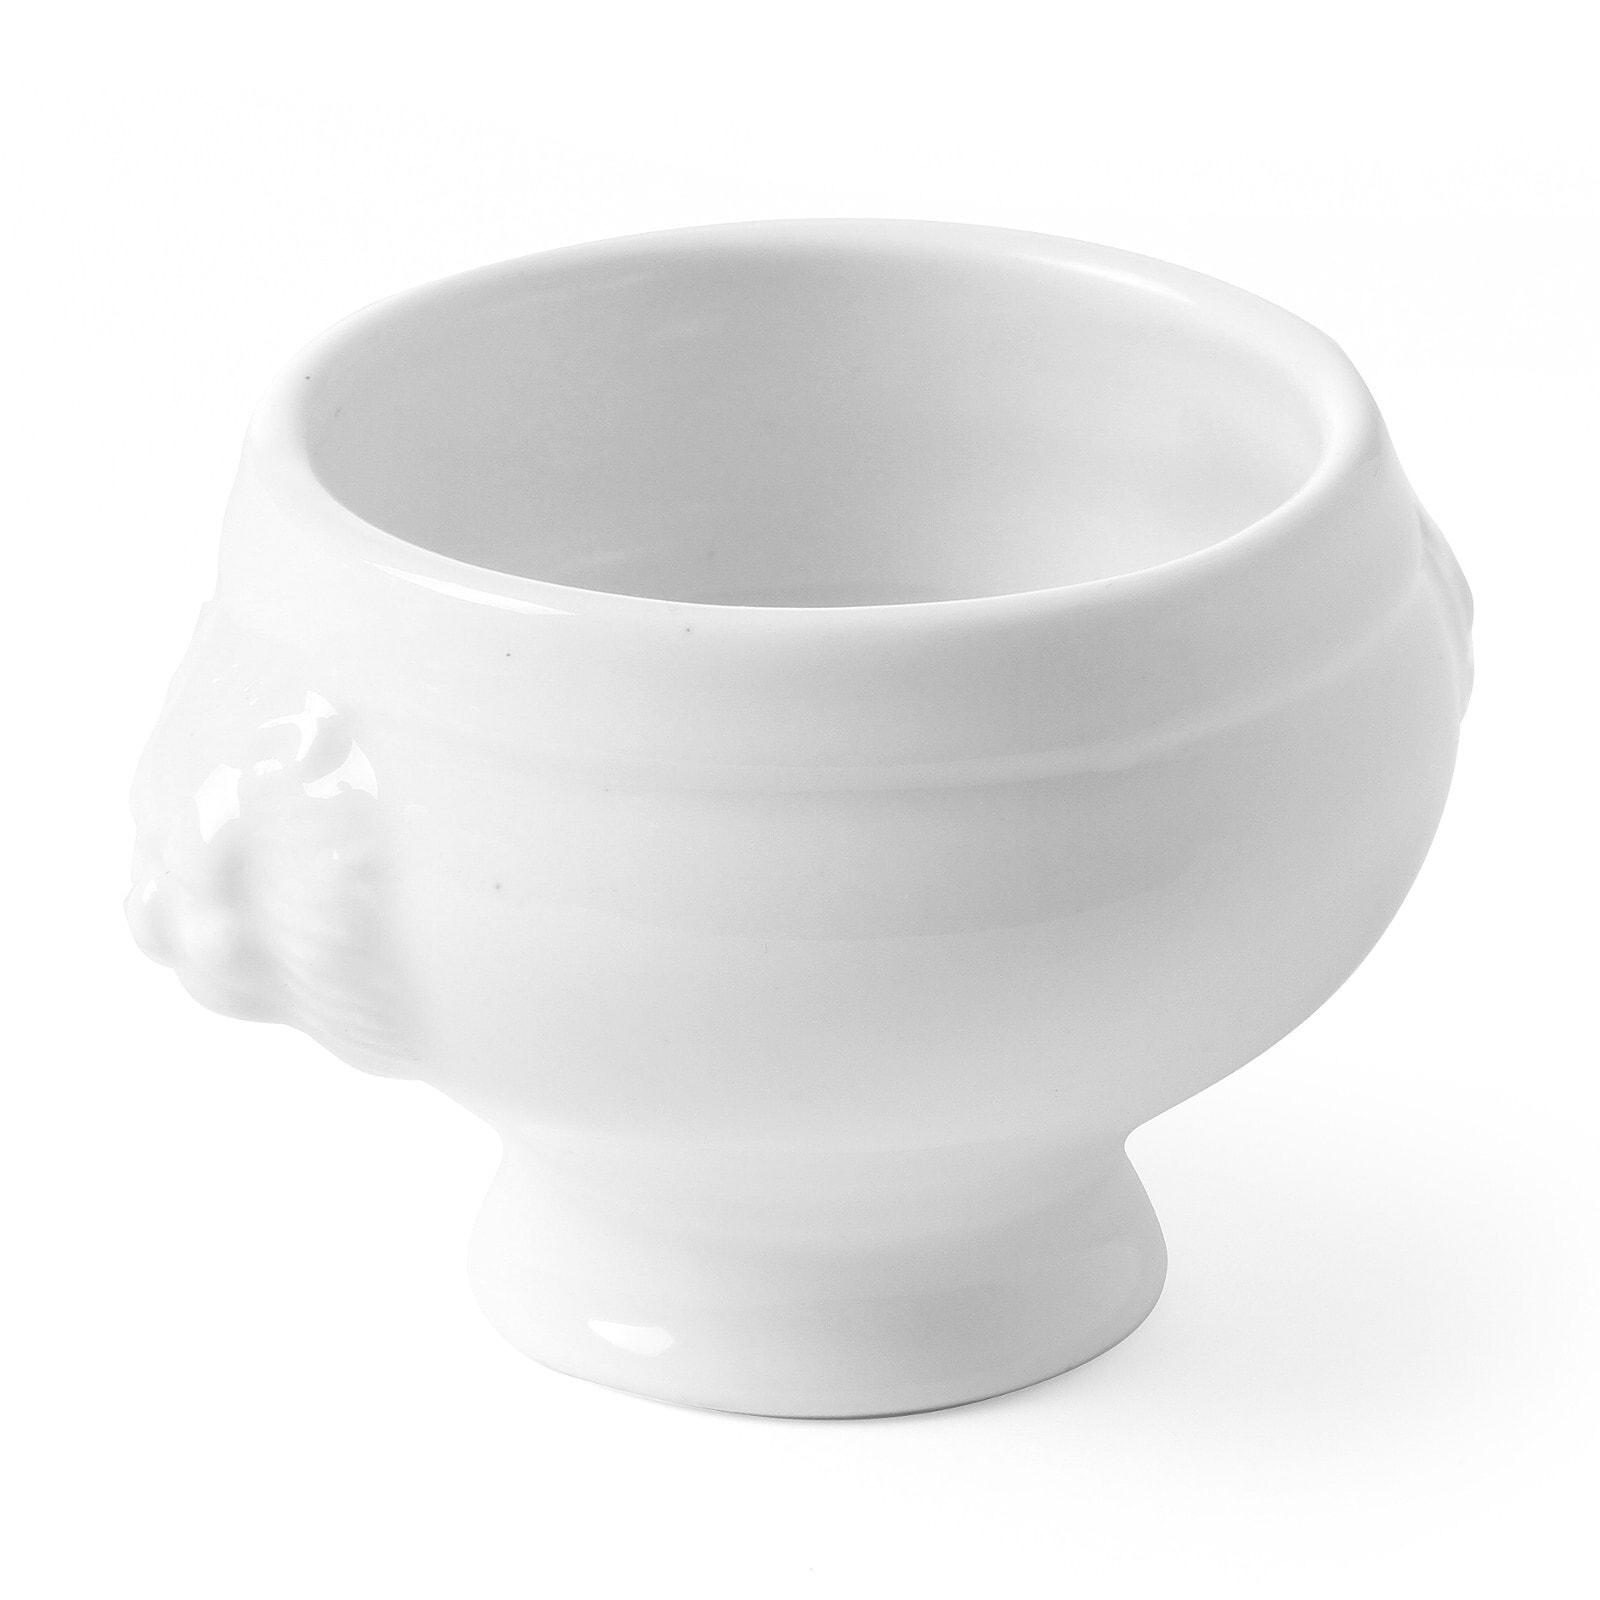 Snack bowl Lionhead TAPAS MINI porcelain set of 6 pcs. - Hendi 784 433